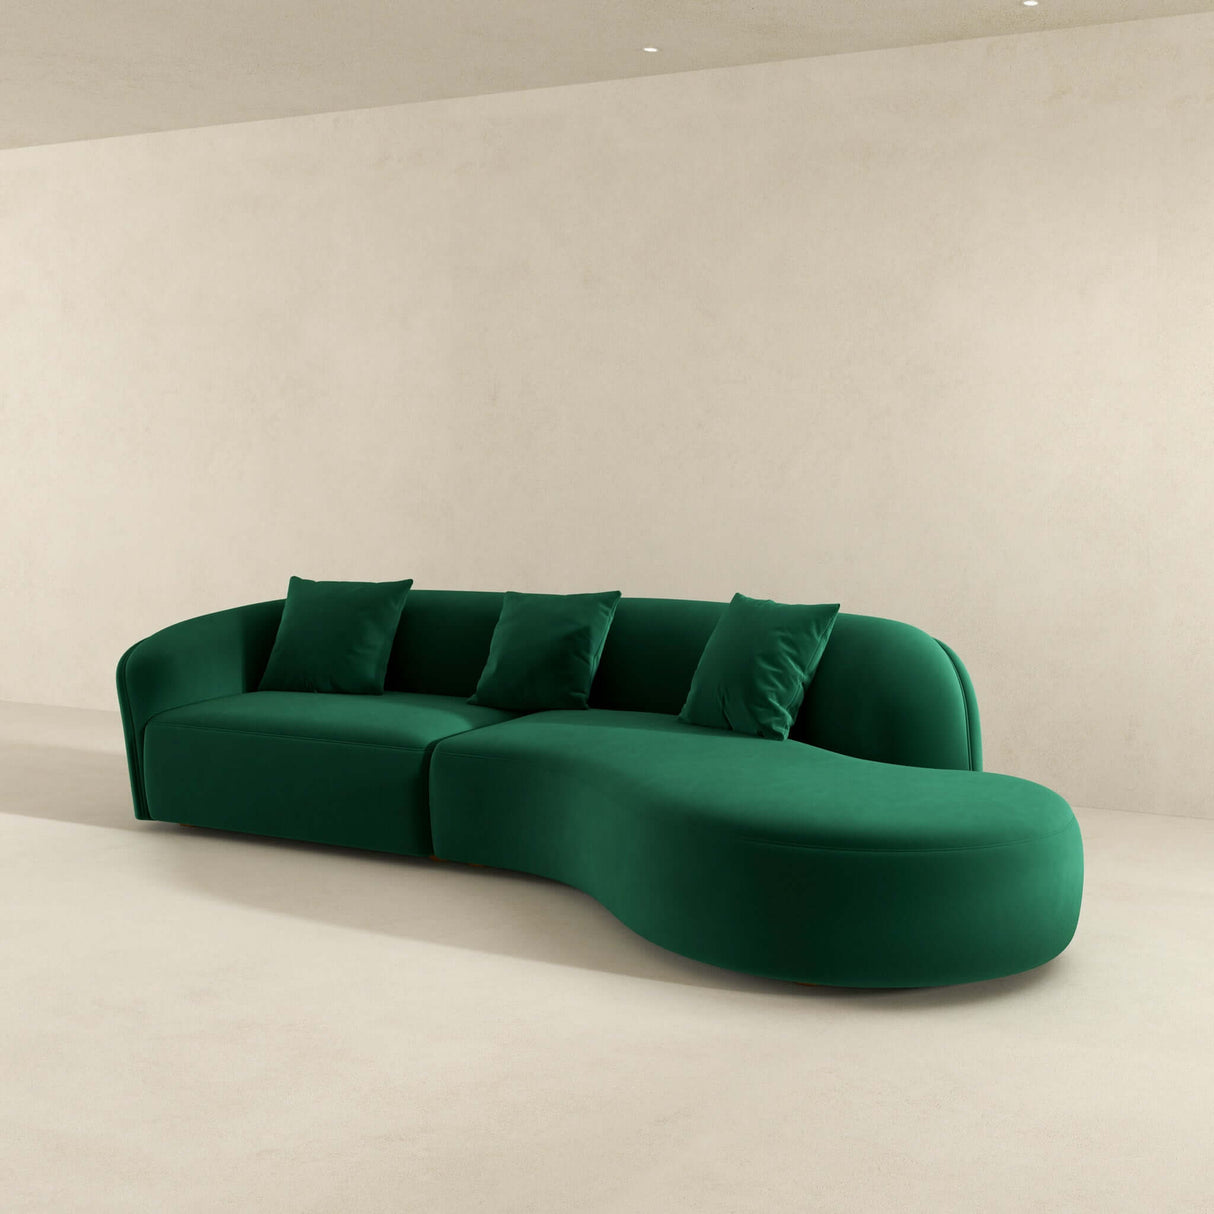 Elijah Japandi Style Curvy Sectional Sofa 133" / Ivory Boucle